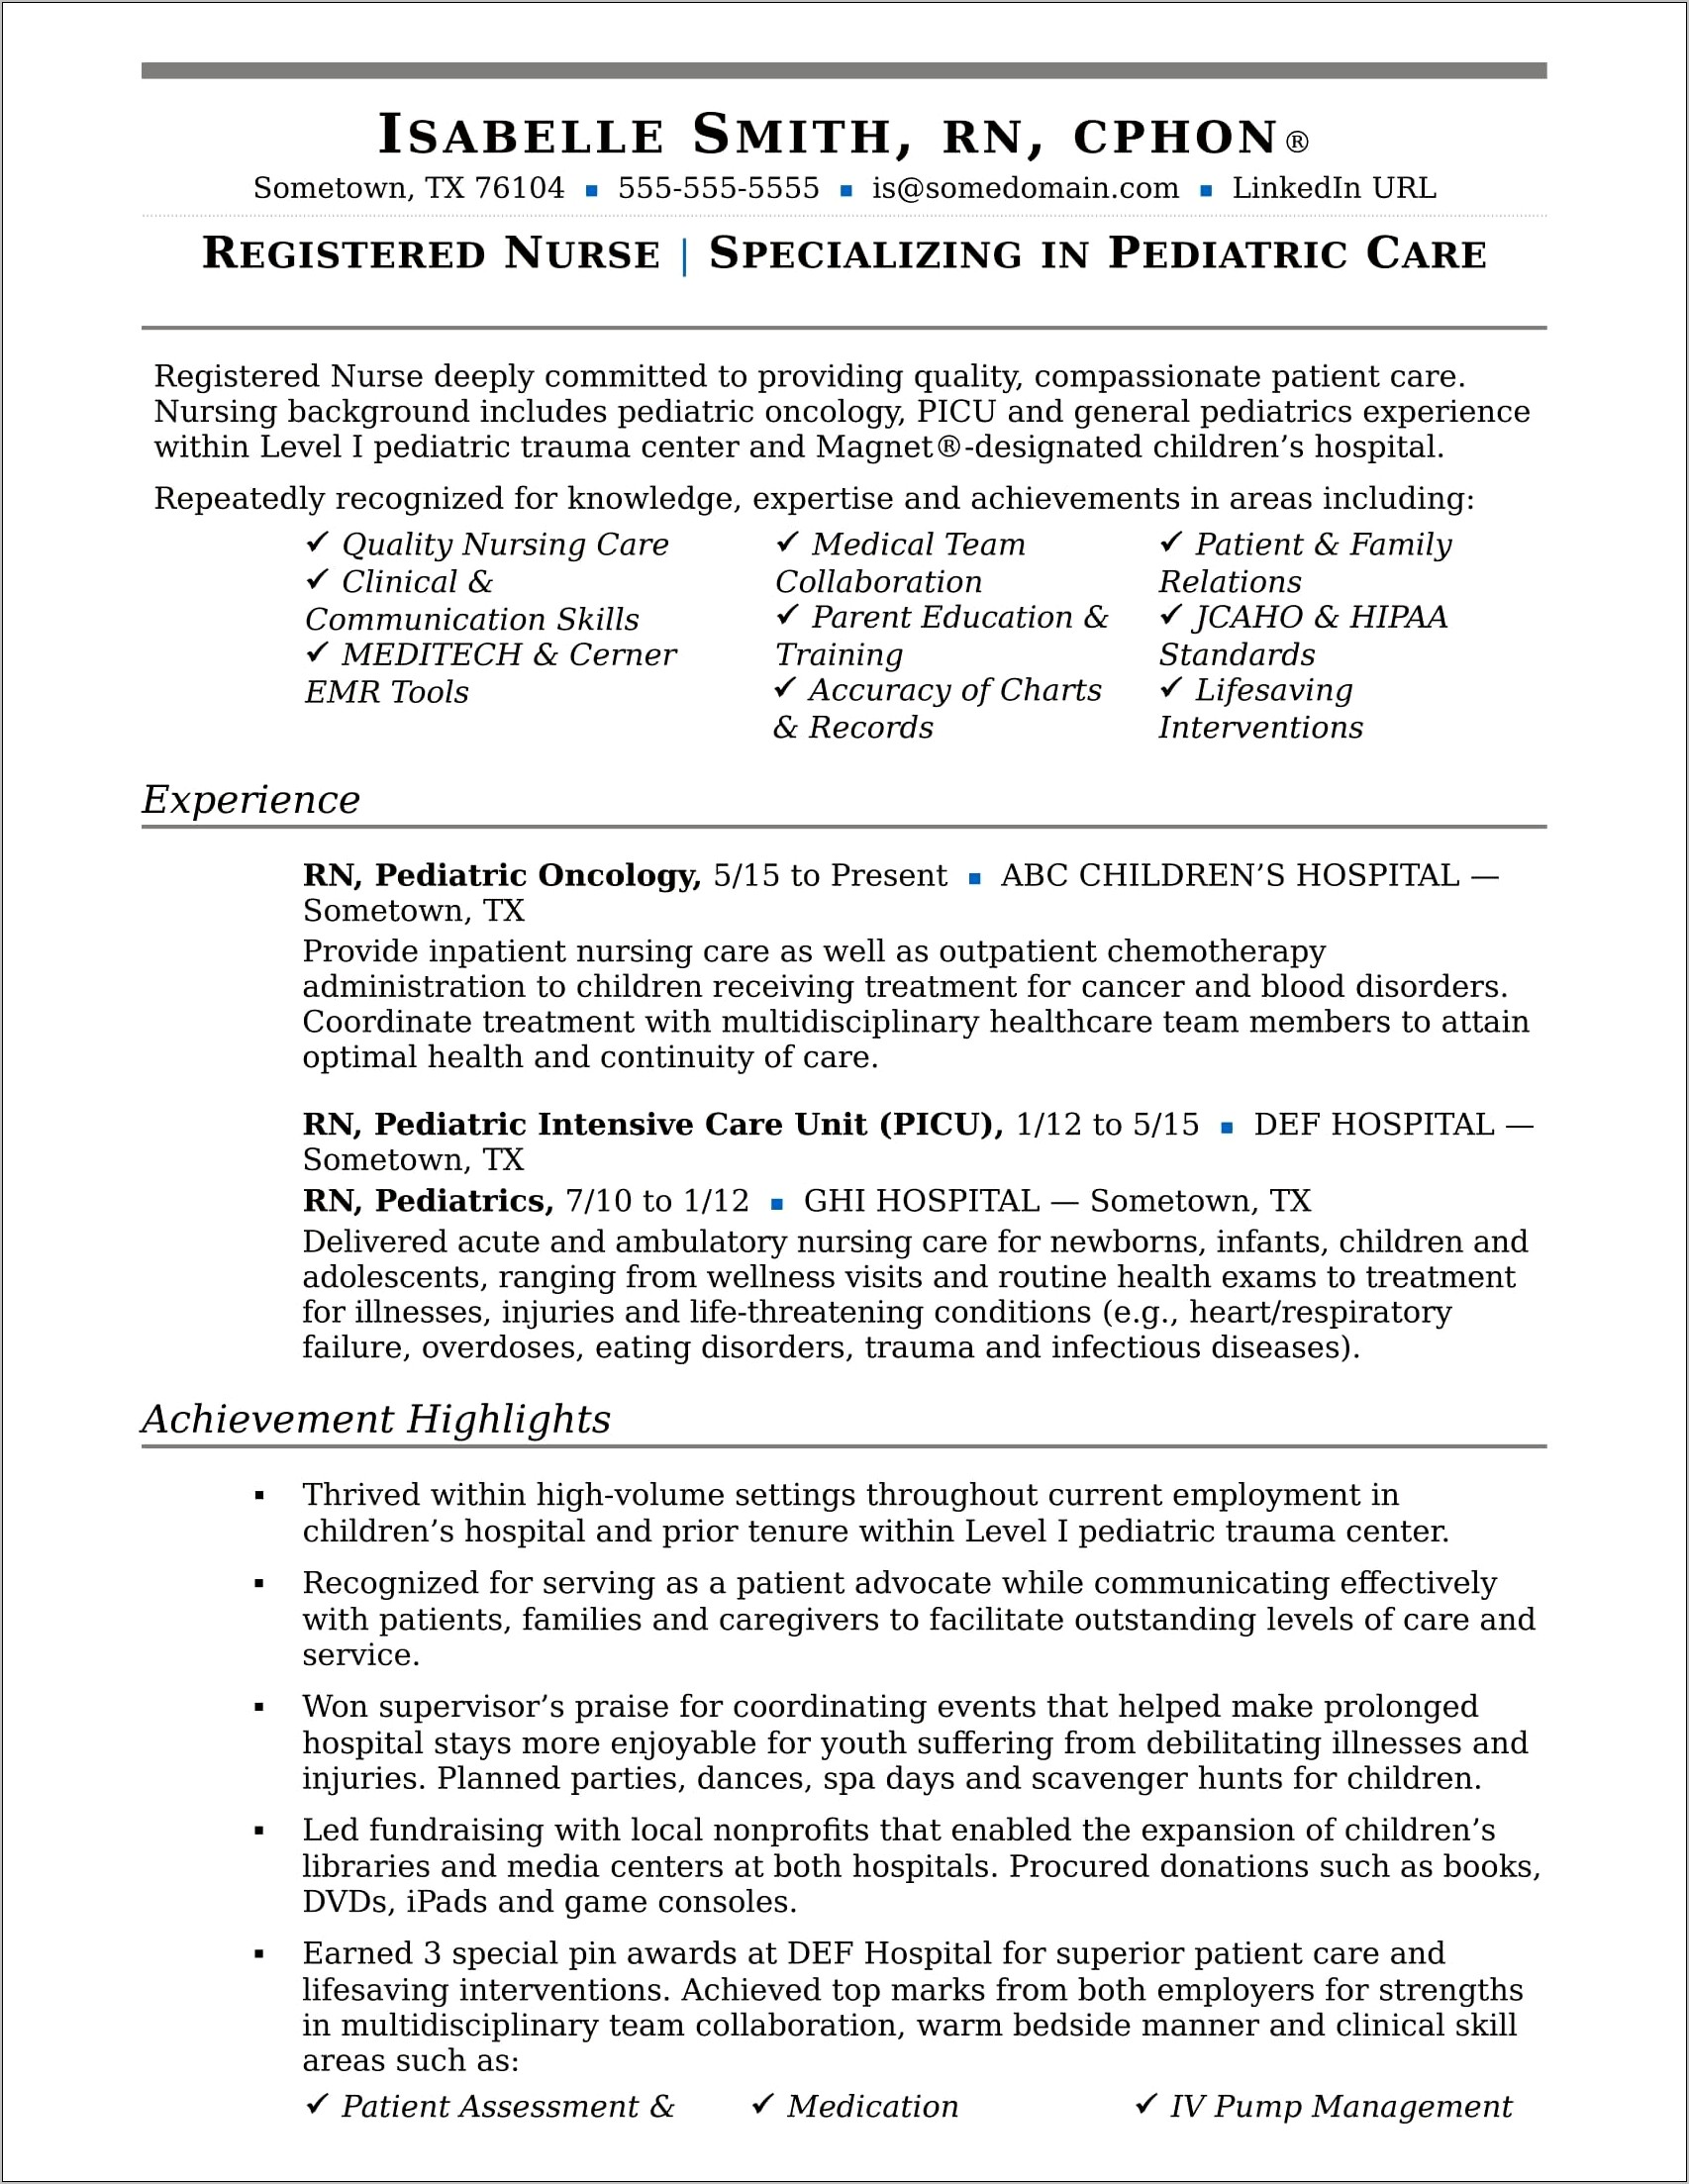 Registered Nurse Resume Sample Format Download